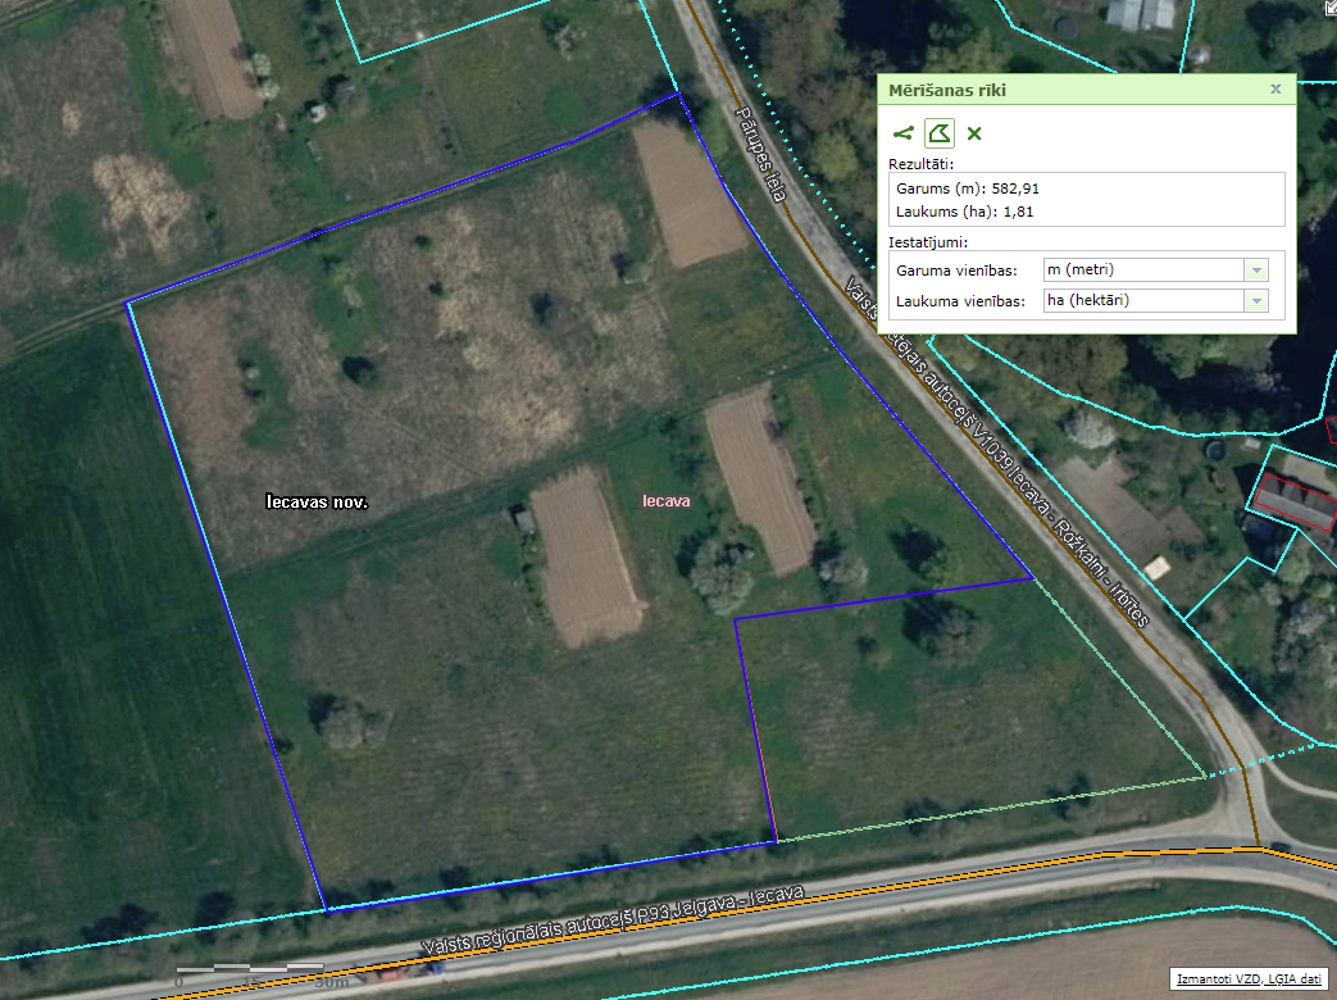 Land plot for sale, Iecavas draudzes īpašums - Image 1